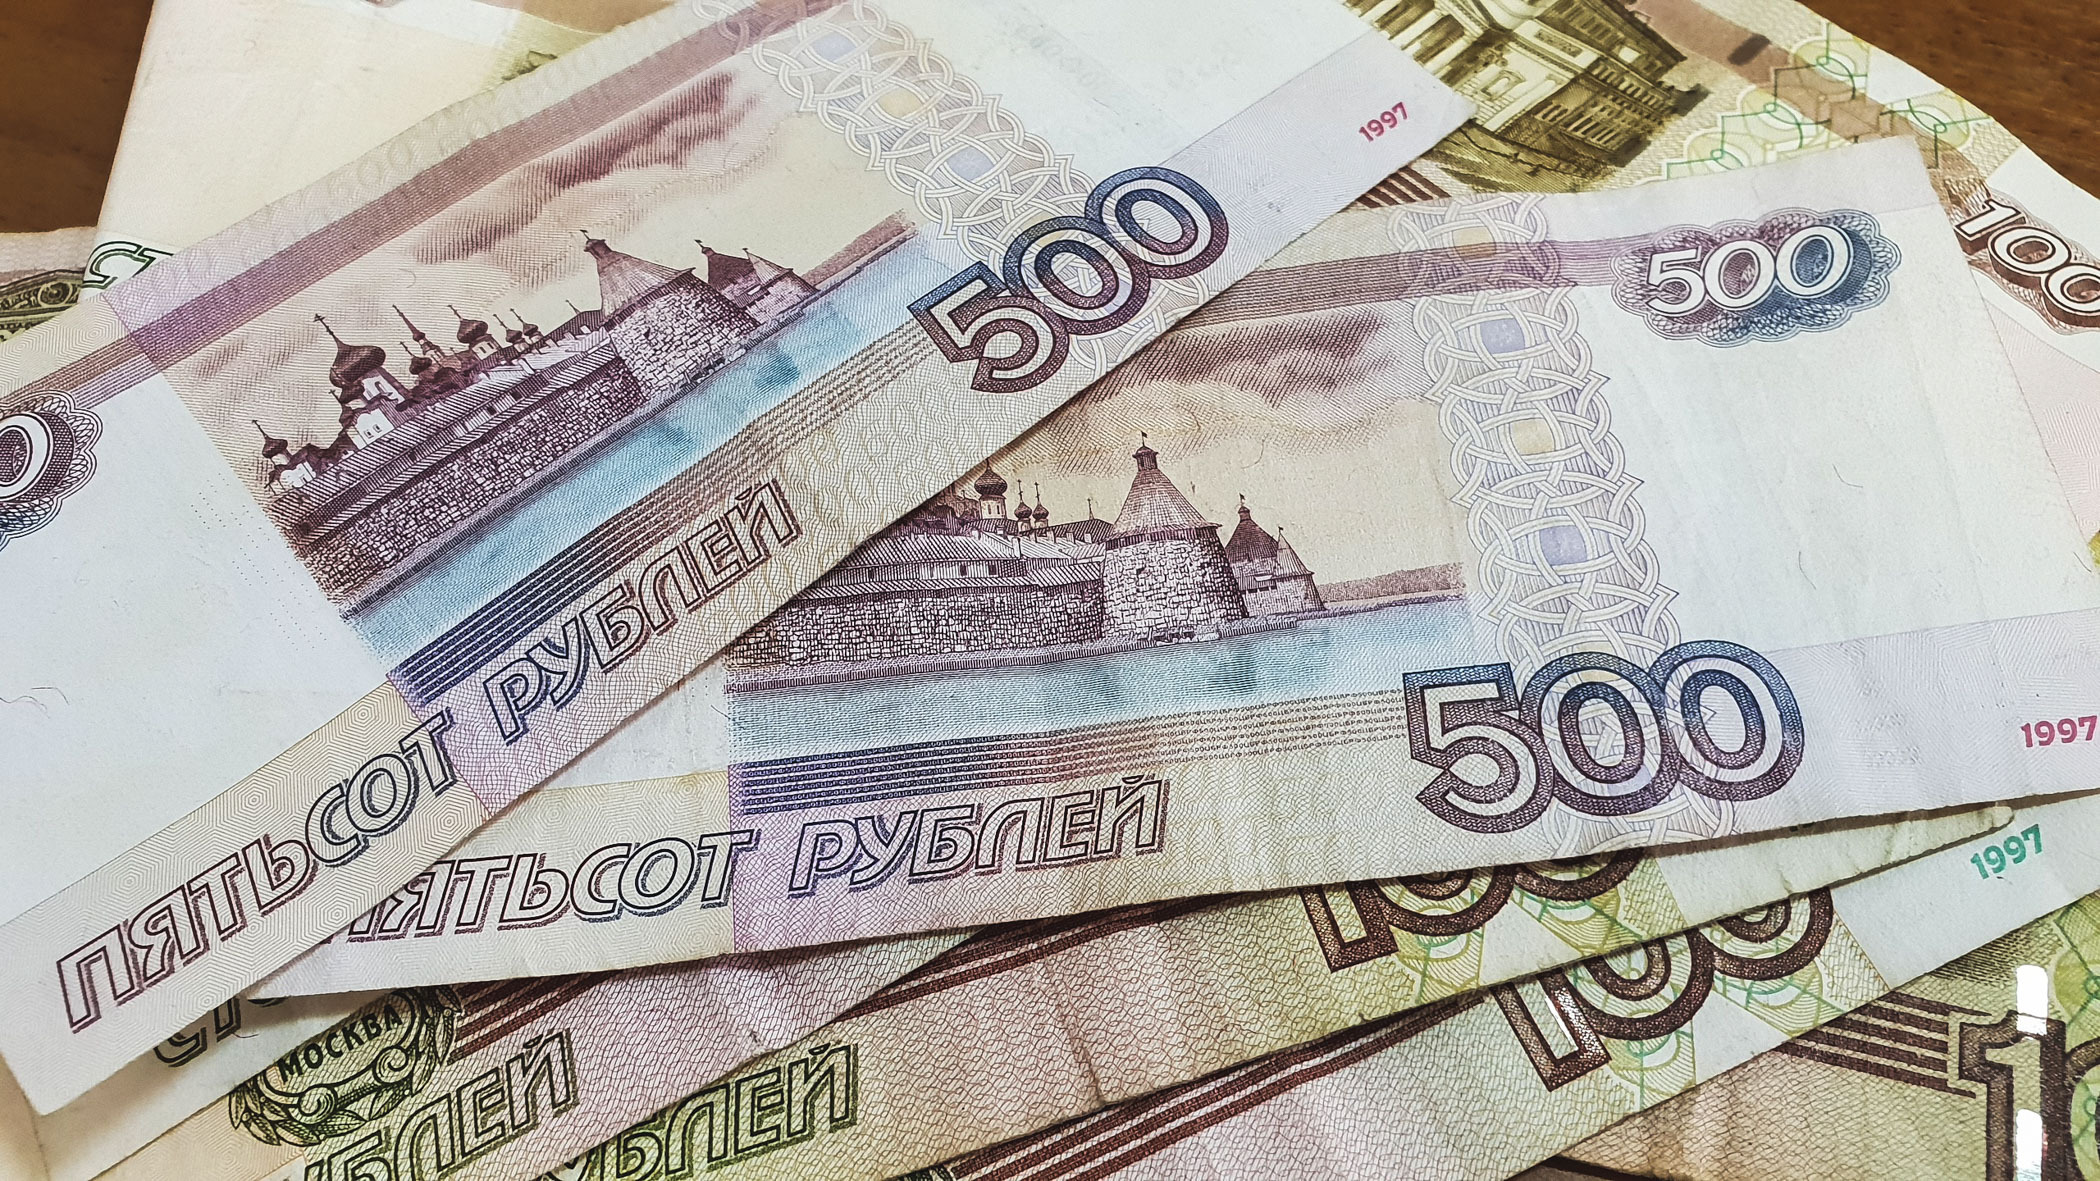 В Тюмени продавец одного из магазинов обманул покупателей на 900 тысяч рублей